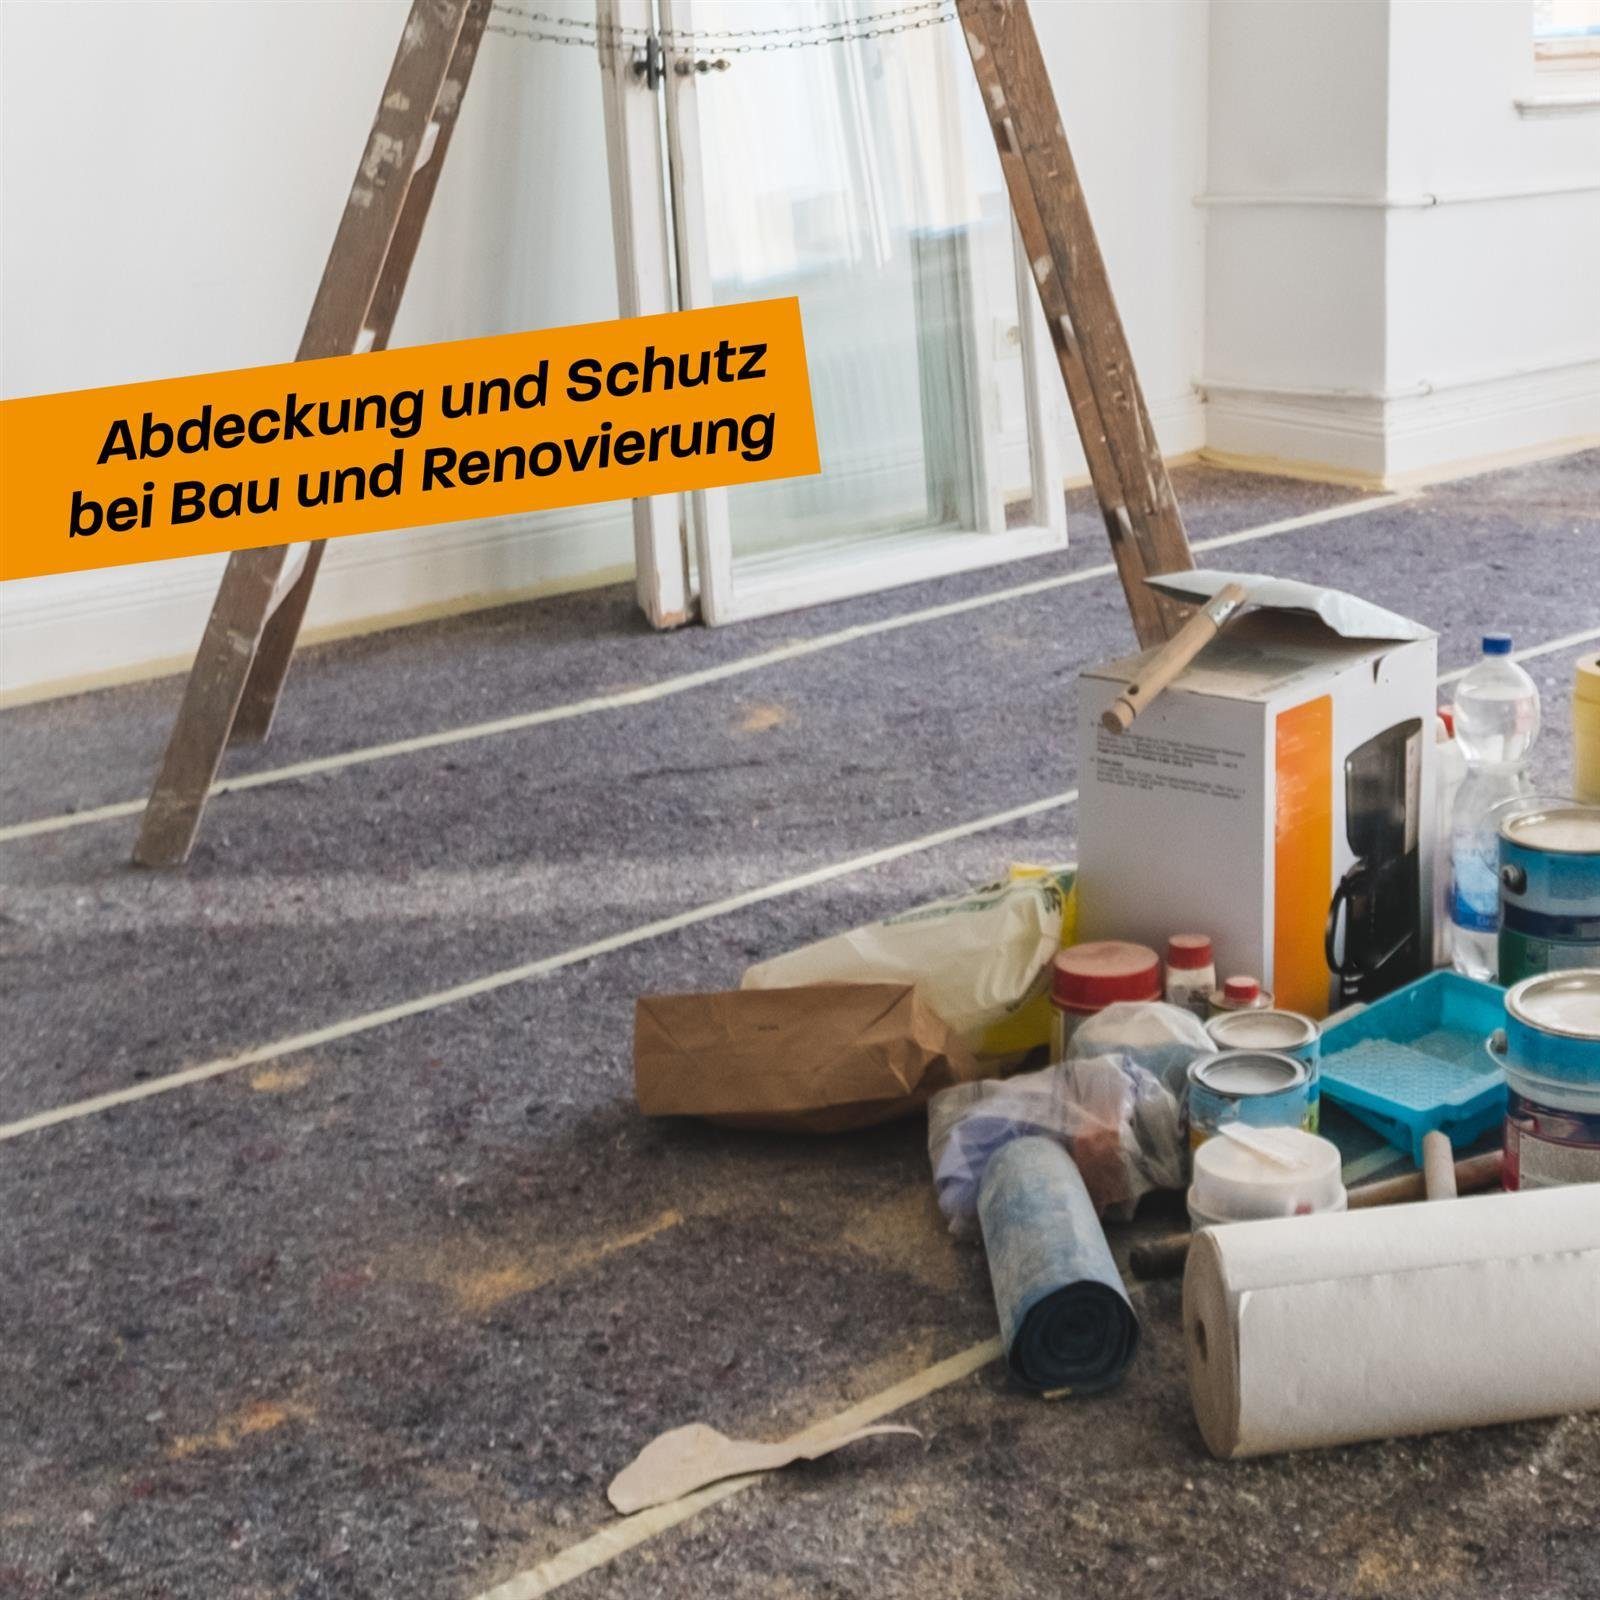 Hinrichs Malervlies Malervlies 5m und für Bodenschutz Umzug rutschfest Vlies Malerarbeiten - Abdeckvlies 180g/m², Renovierung